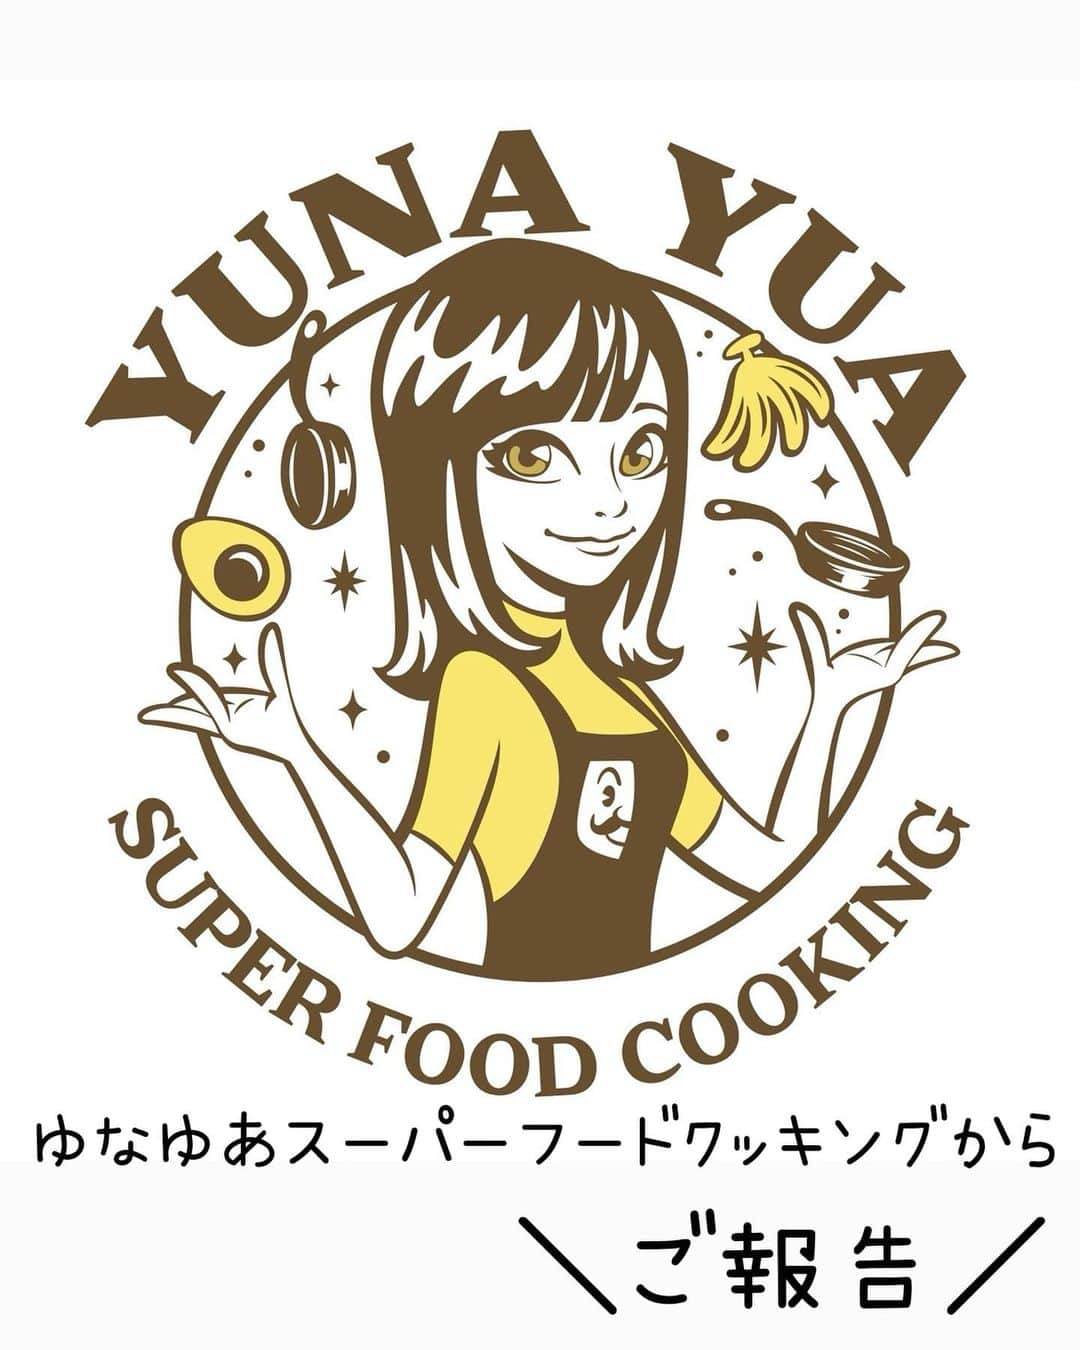 ゆなゆあのインスタグラム：「・ 【 Yunayua Super Food Cookingからお知らせ】  いつもYouTube 「ゆなゆあスーパーフードクッキング」を ご視聴頂いている皆様へお知らせです。  本日より、9月のYouTube更新が お休みになります事をご報告させて頂きます。  理由としましては、11月に販売がスタートする 新プロジェクトの予定が非常にタイトな為、 9月のYouTube更新は一旦お休みさせて頂きます。  又、10月からは月1〜2回更新で ゆなゆあスーパーフードクッキングを公開予定です！  丁度コロナ禍前の2020年…  編集なんぞや右も左も分からない状態の ほぼ勢いでスタートしたゆなゆあYouTube。  週一更新から始まり、多い時は週3更新していた時期も。 私の”進化”と共にコツコツと動画が溜まり、  気づけば数々のスーパーフードレシピが このYouTubeから誕生しました。  総視聴回数は356.5万回(3,565,039)と 現在まで、沢山の方々が私の動画を見てくれた。  という紛れもない事実にも感謝だなぁと。  私が今こうして色々なお仕事が出来るのも 原点はYouTubeであり、自らで我武者羅に 切り開いてきた「足跡」みたいなものだと思ってます。  毎月欠かさず約4年間更新してきたYouTubeを お休みする事はとても抵抗が有りますが、  ”作業がどうしても追いつかない”といった マイナスの現状を逆にプラスと捉え、  次のステップへの成長、そして基板作りに 充てようと思っております！  いつも応援して頂けている方々には本当に感謝です。 今後もよりパワーアップした私と  ”ゆなゆあスーパーフードクッキング”を お届けできるよう頑張りたいなと思ってます！  少し間は空きますが、引き続き ゆなゆあスーパーフードクッキングを どうぞよろしくお願い致します！  ※ 11月の新プロジェクトについては また改めてご報告させて下さい！  … #ゆなゆあスーパーフードクッキング #youtube  #ゆなゆあ楽得飯 #ゆなゆあクッキング #スーパーフード #スーパーフードレシピ #スーパーフードアドバイザー」